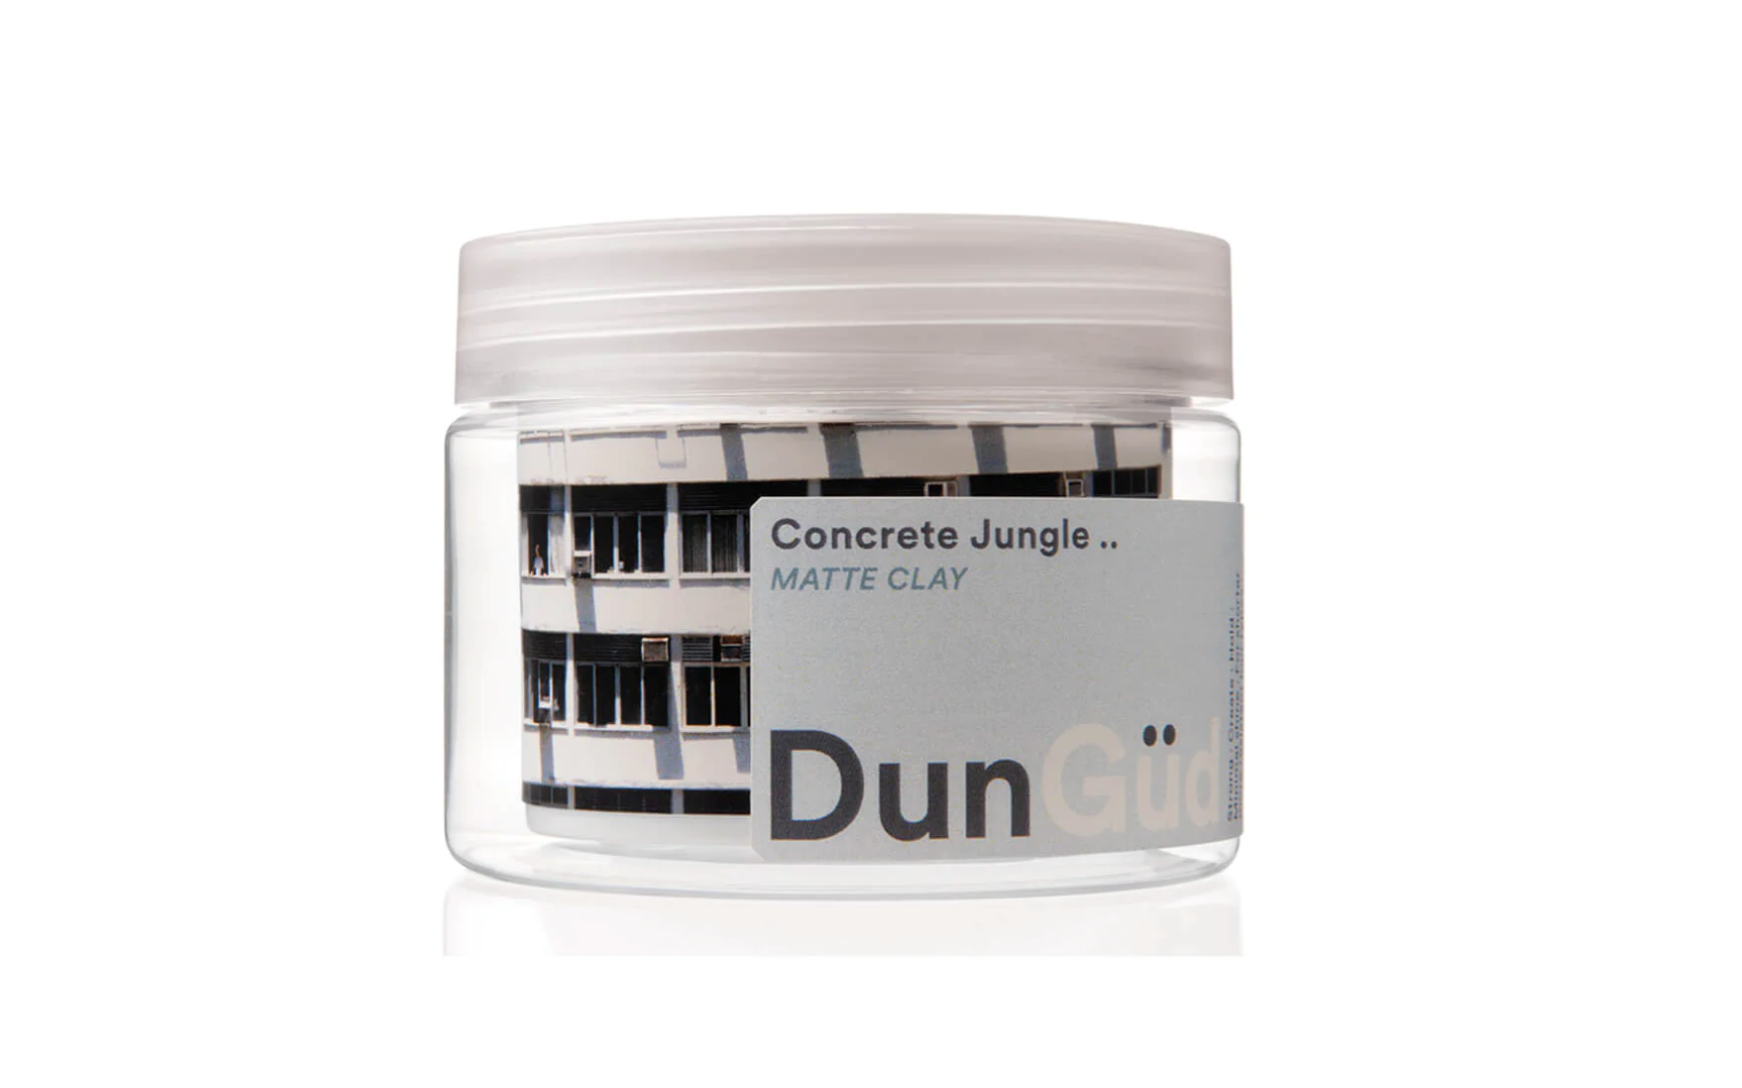 DunGud Concrete Jungle Matte Clay 100ml